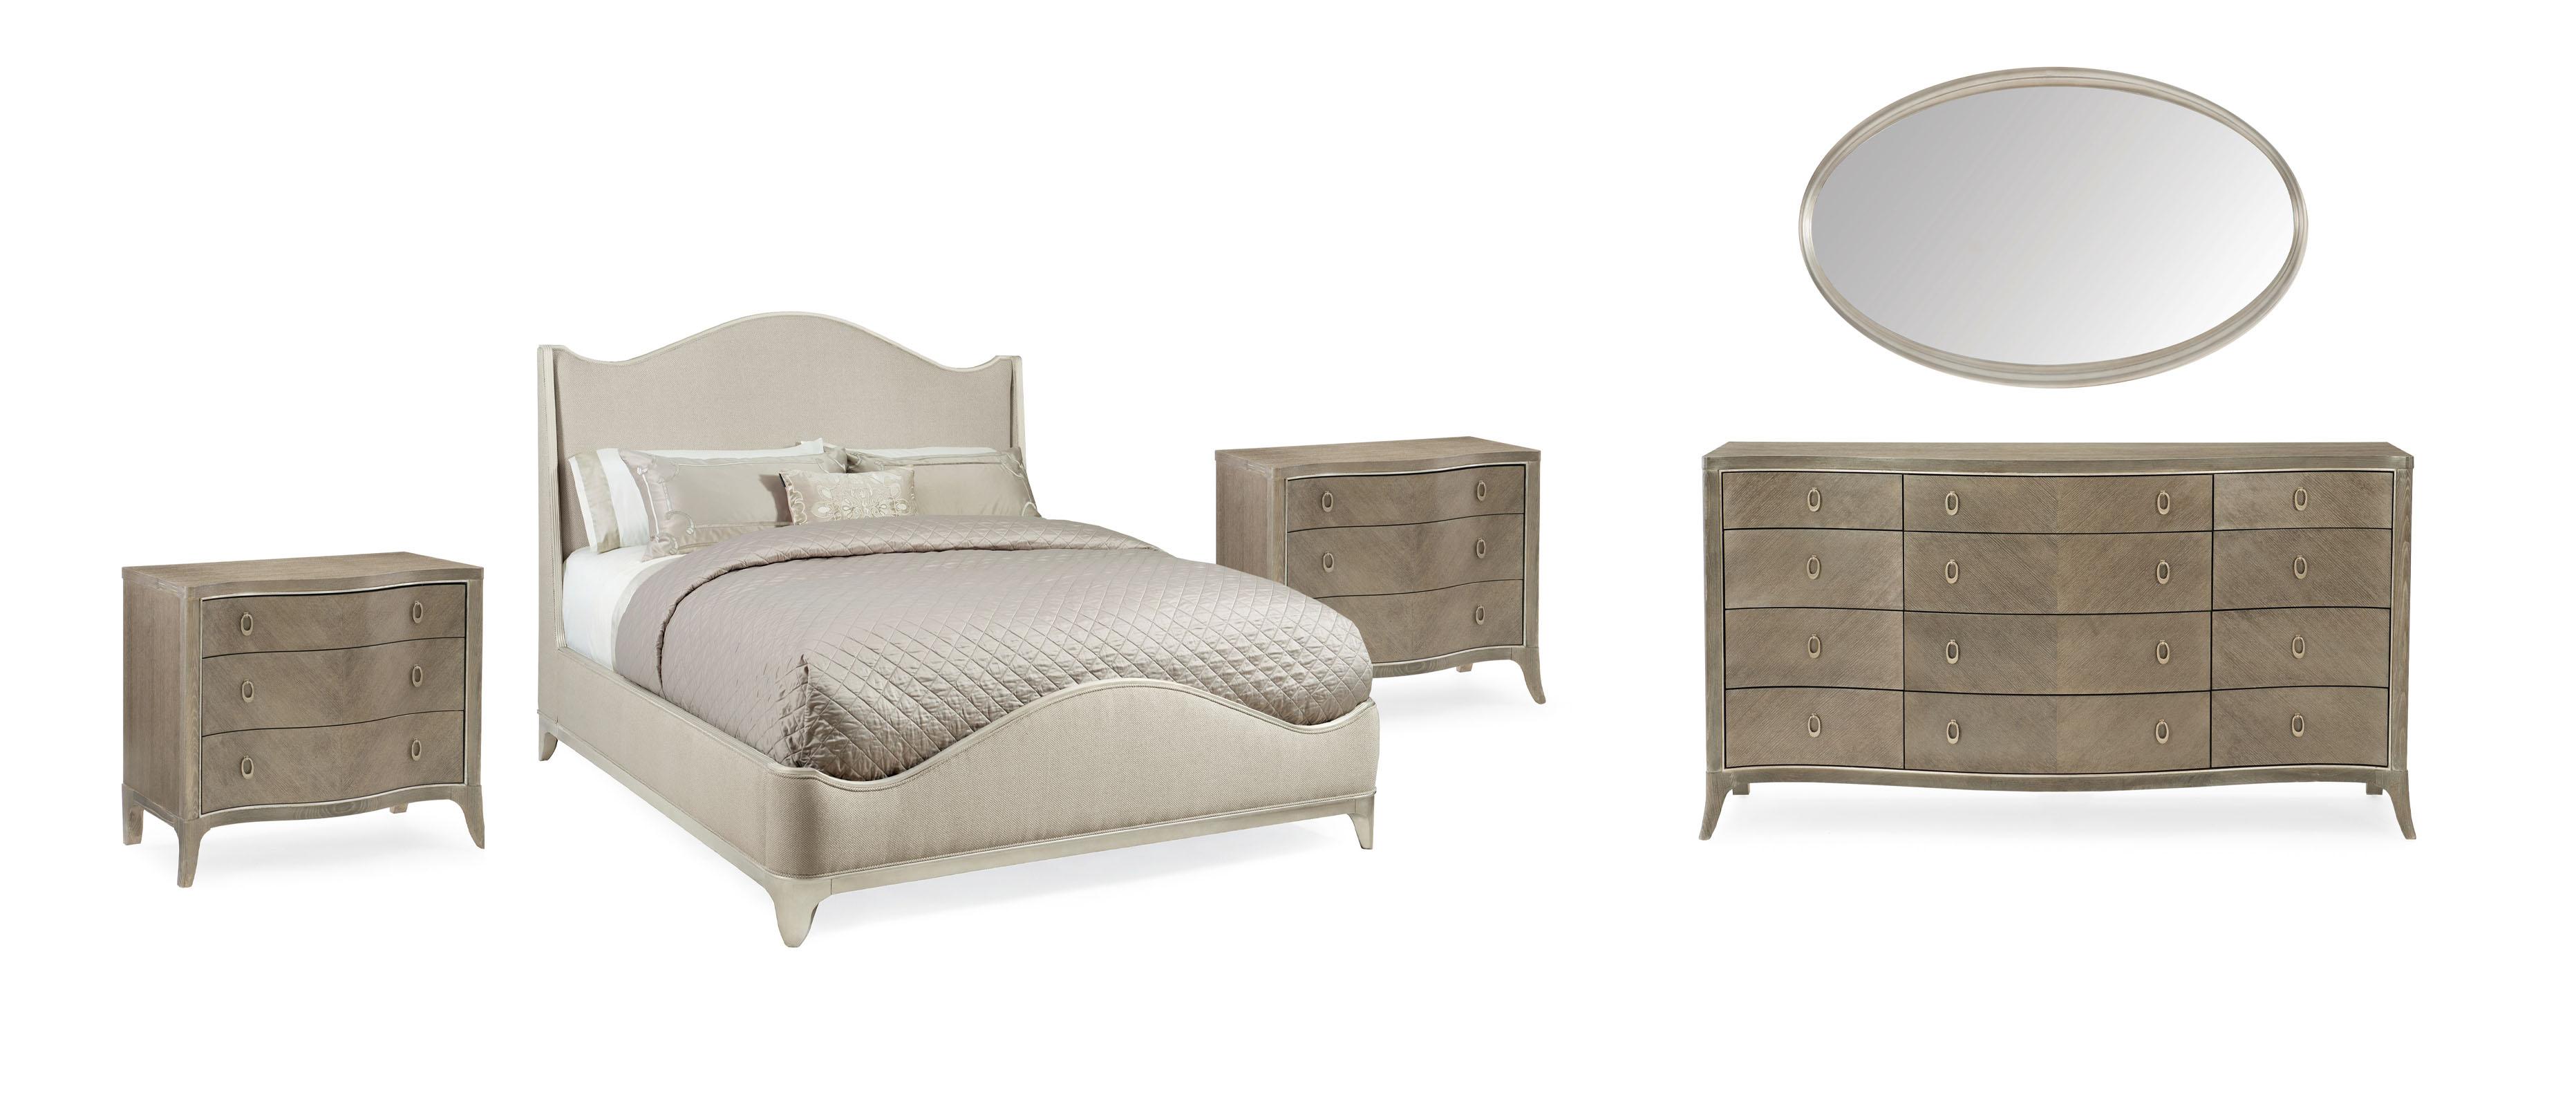 Contemporary Sleigh Bedroom Set AVONDALE KING UPHOLSTERED BED / AVONDALE NIGHTSTAND / AVONDALE  DRESSER / AVONDALE  MIRROR C023-417-121-Set-5 in Cream, Silver Fabric